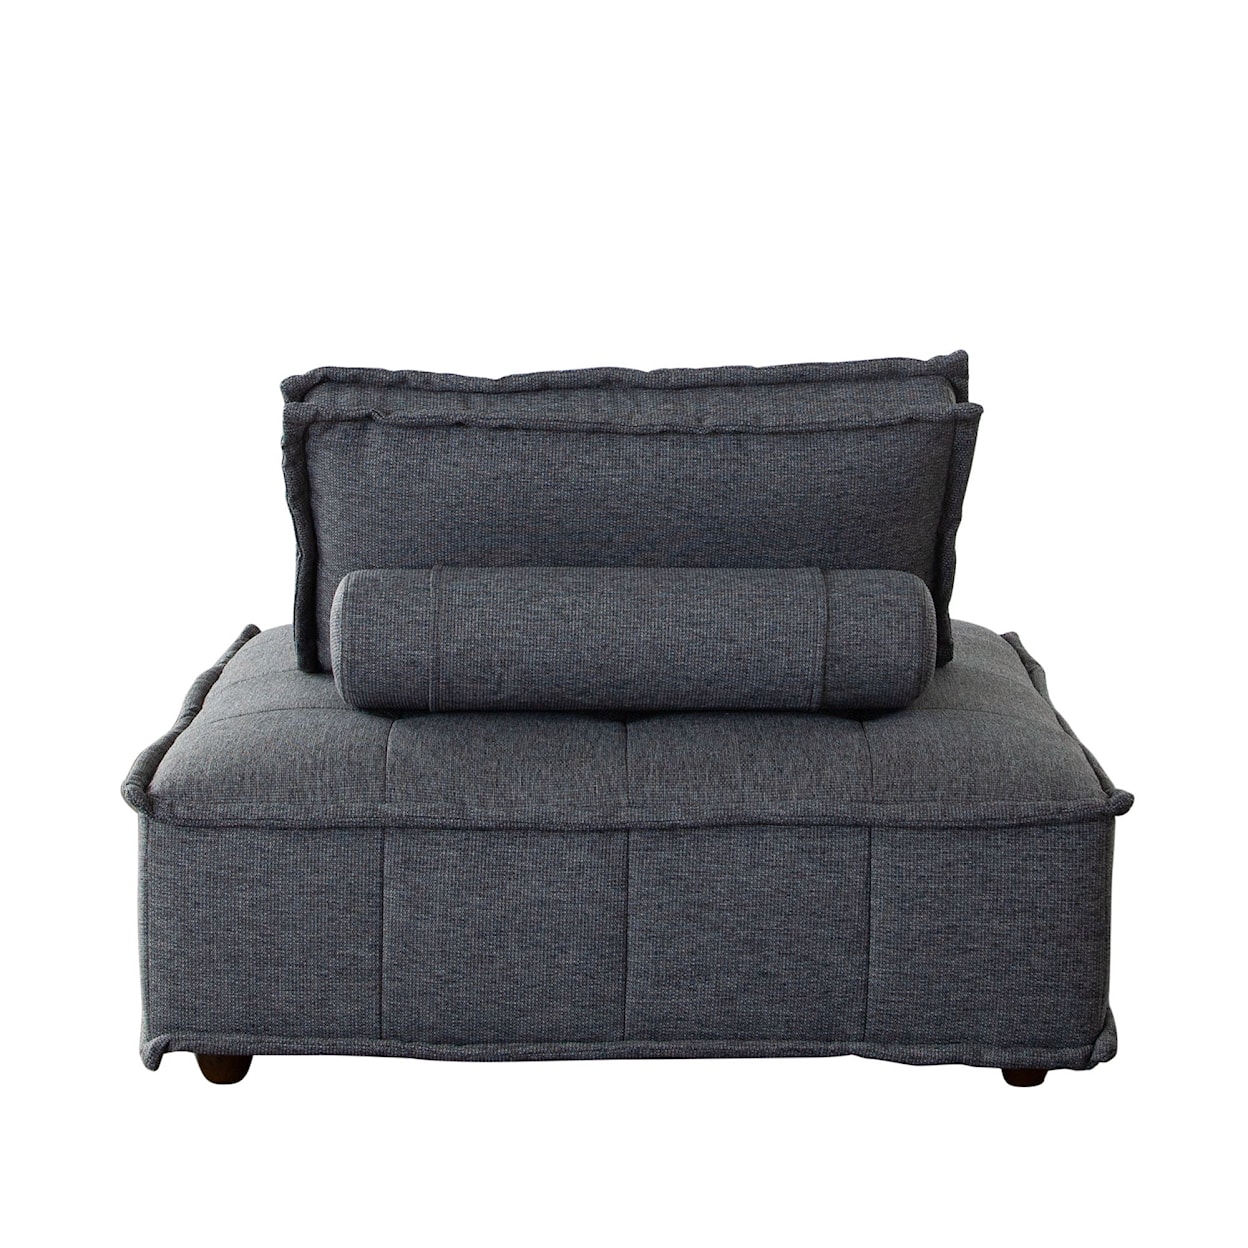 Diamond Sofa Furniture Platform Platform Square Modular Lounger